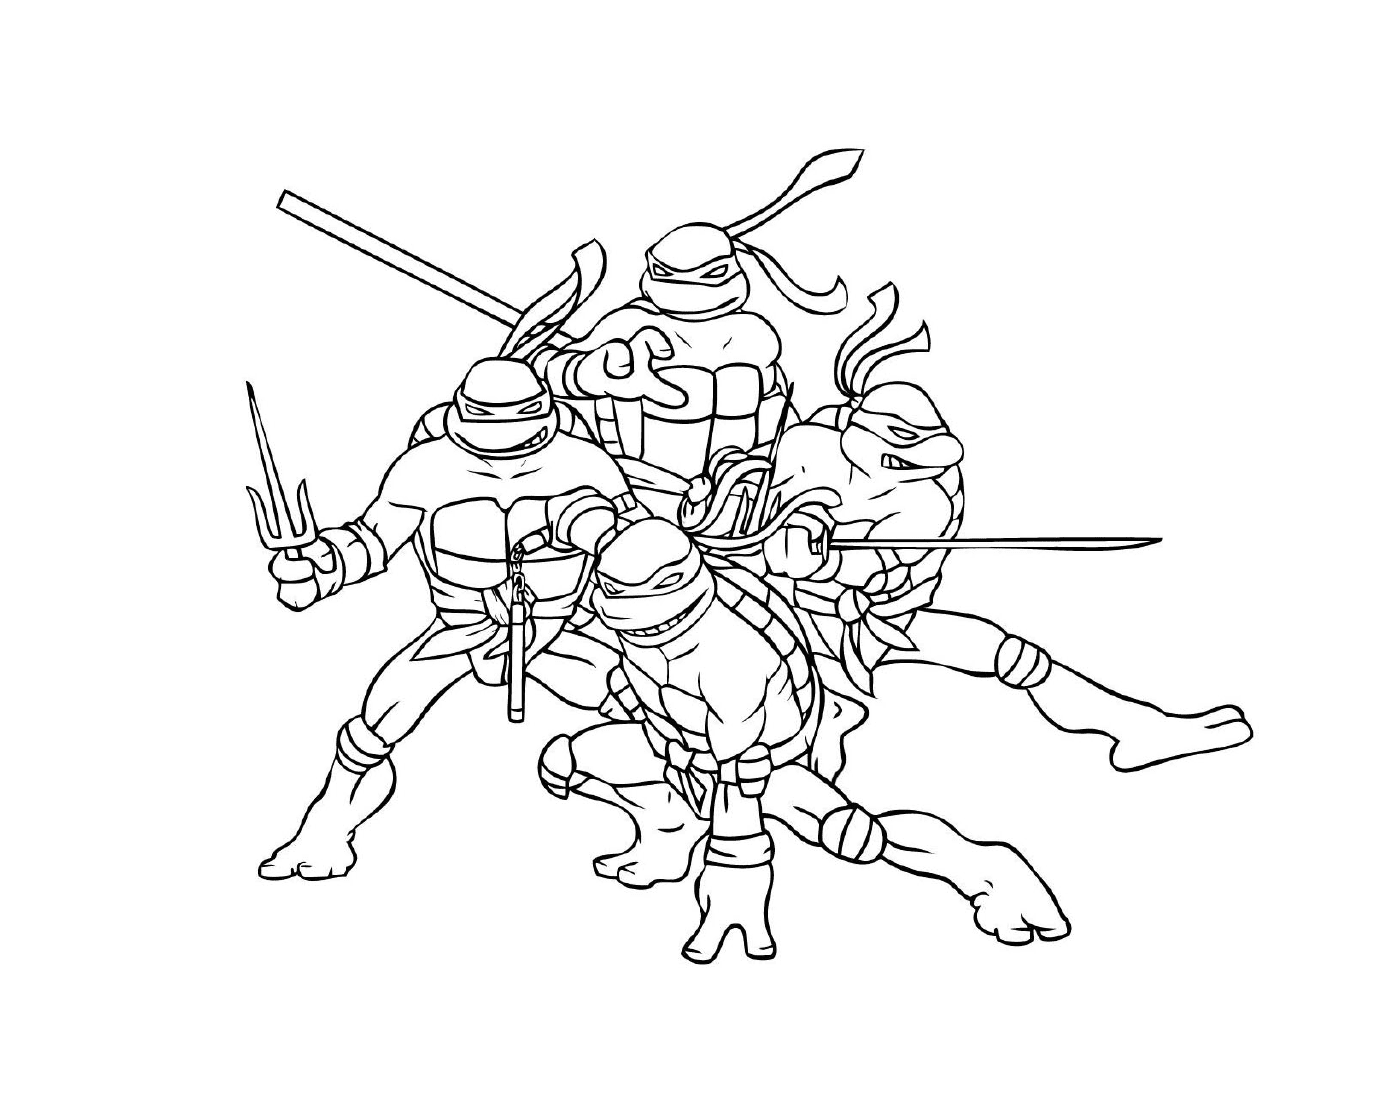  Gruppe von Ninja Schildkröten 